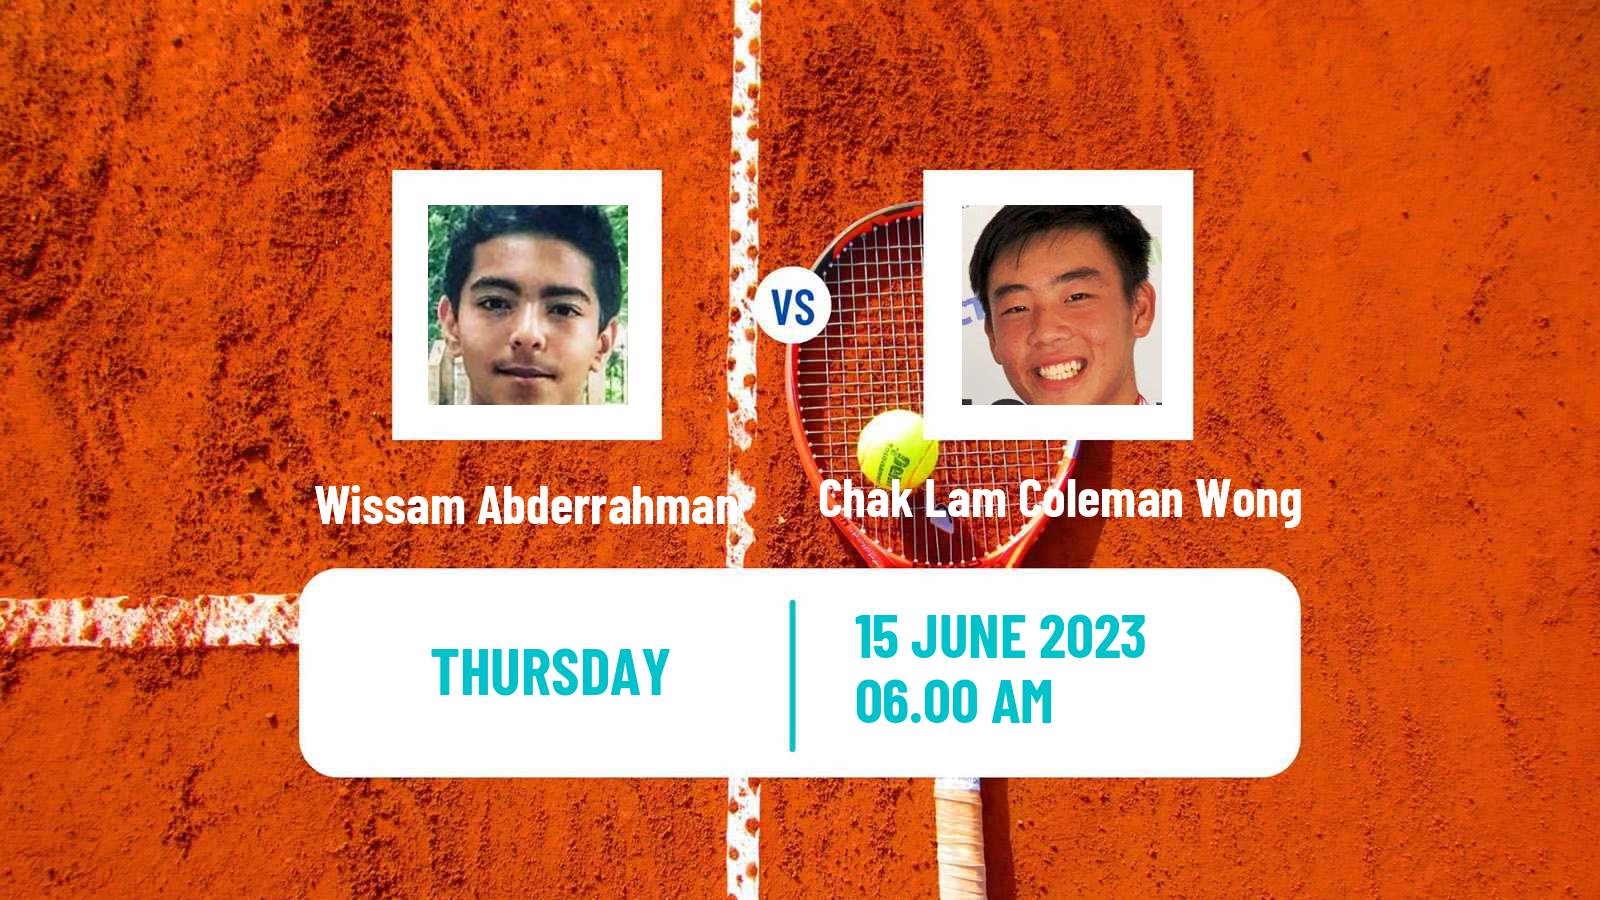 Tennis ITF M15 Monastir 24 Men Wissam Abderrahman - Chak Lam Coleman Wong